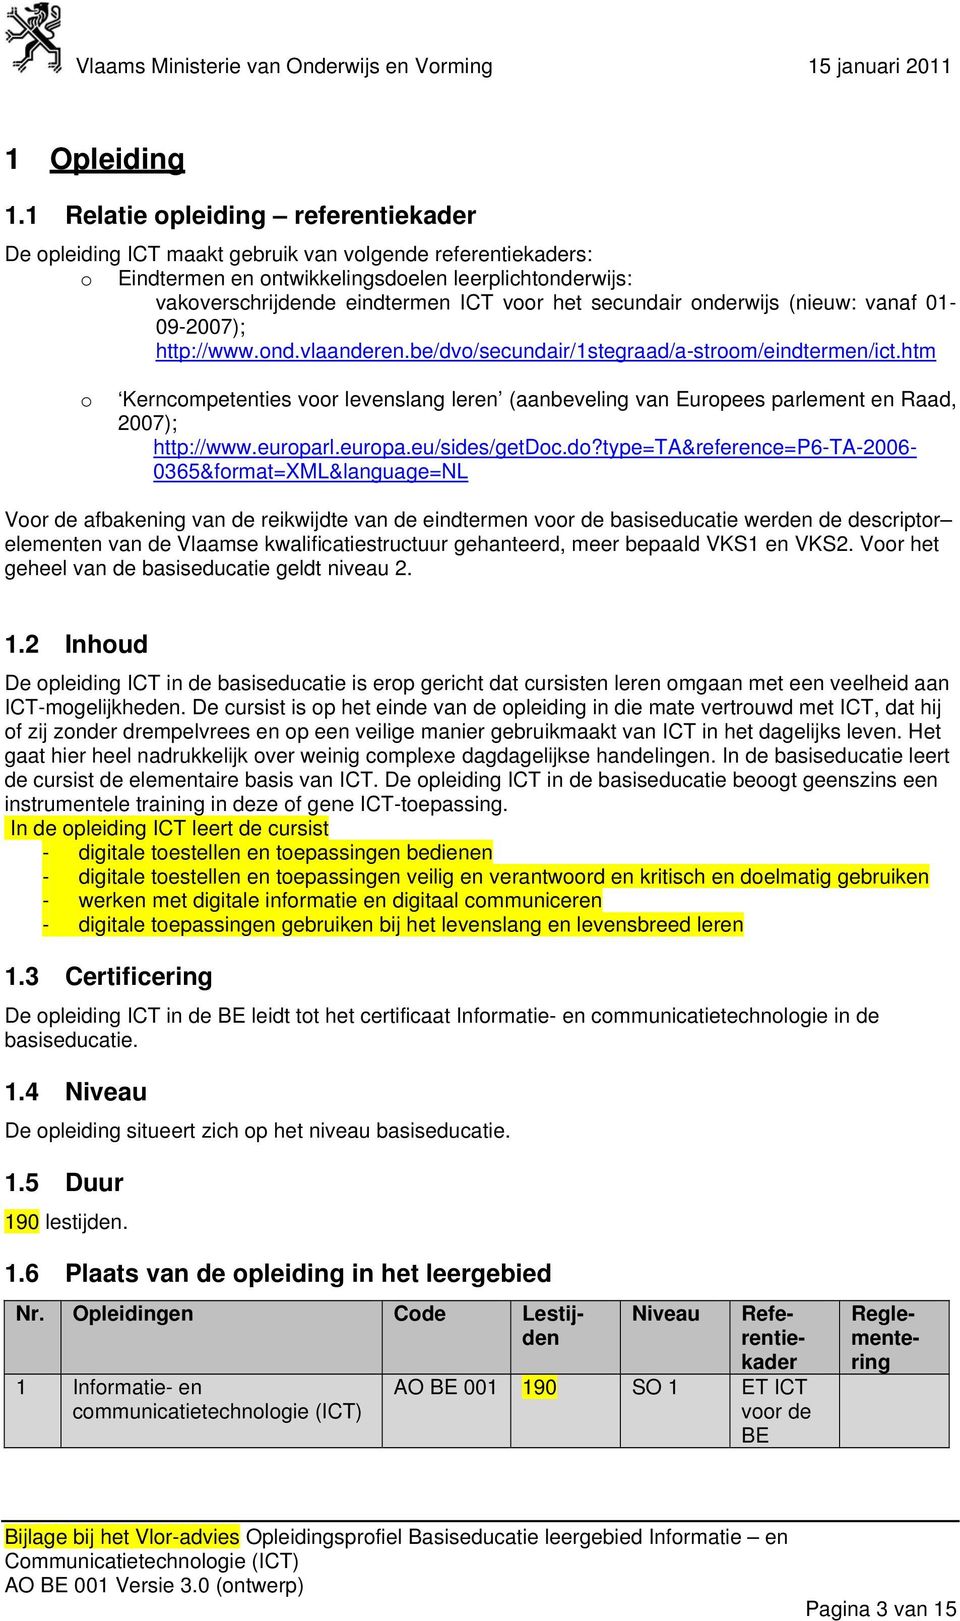 secundair onderwijs (nieuw: vanaf 01-09-2007); HUhttp://www.ond.vlaanderen.be/dvo/secundair/1stegraad/a-stroom/eindtermen/ict.